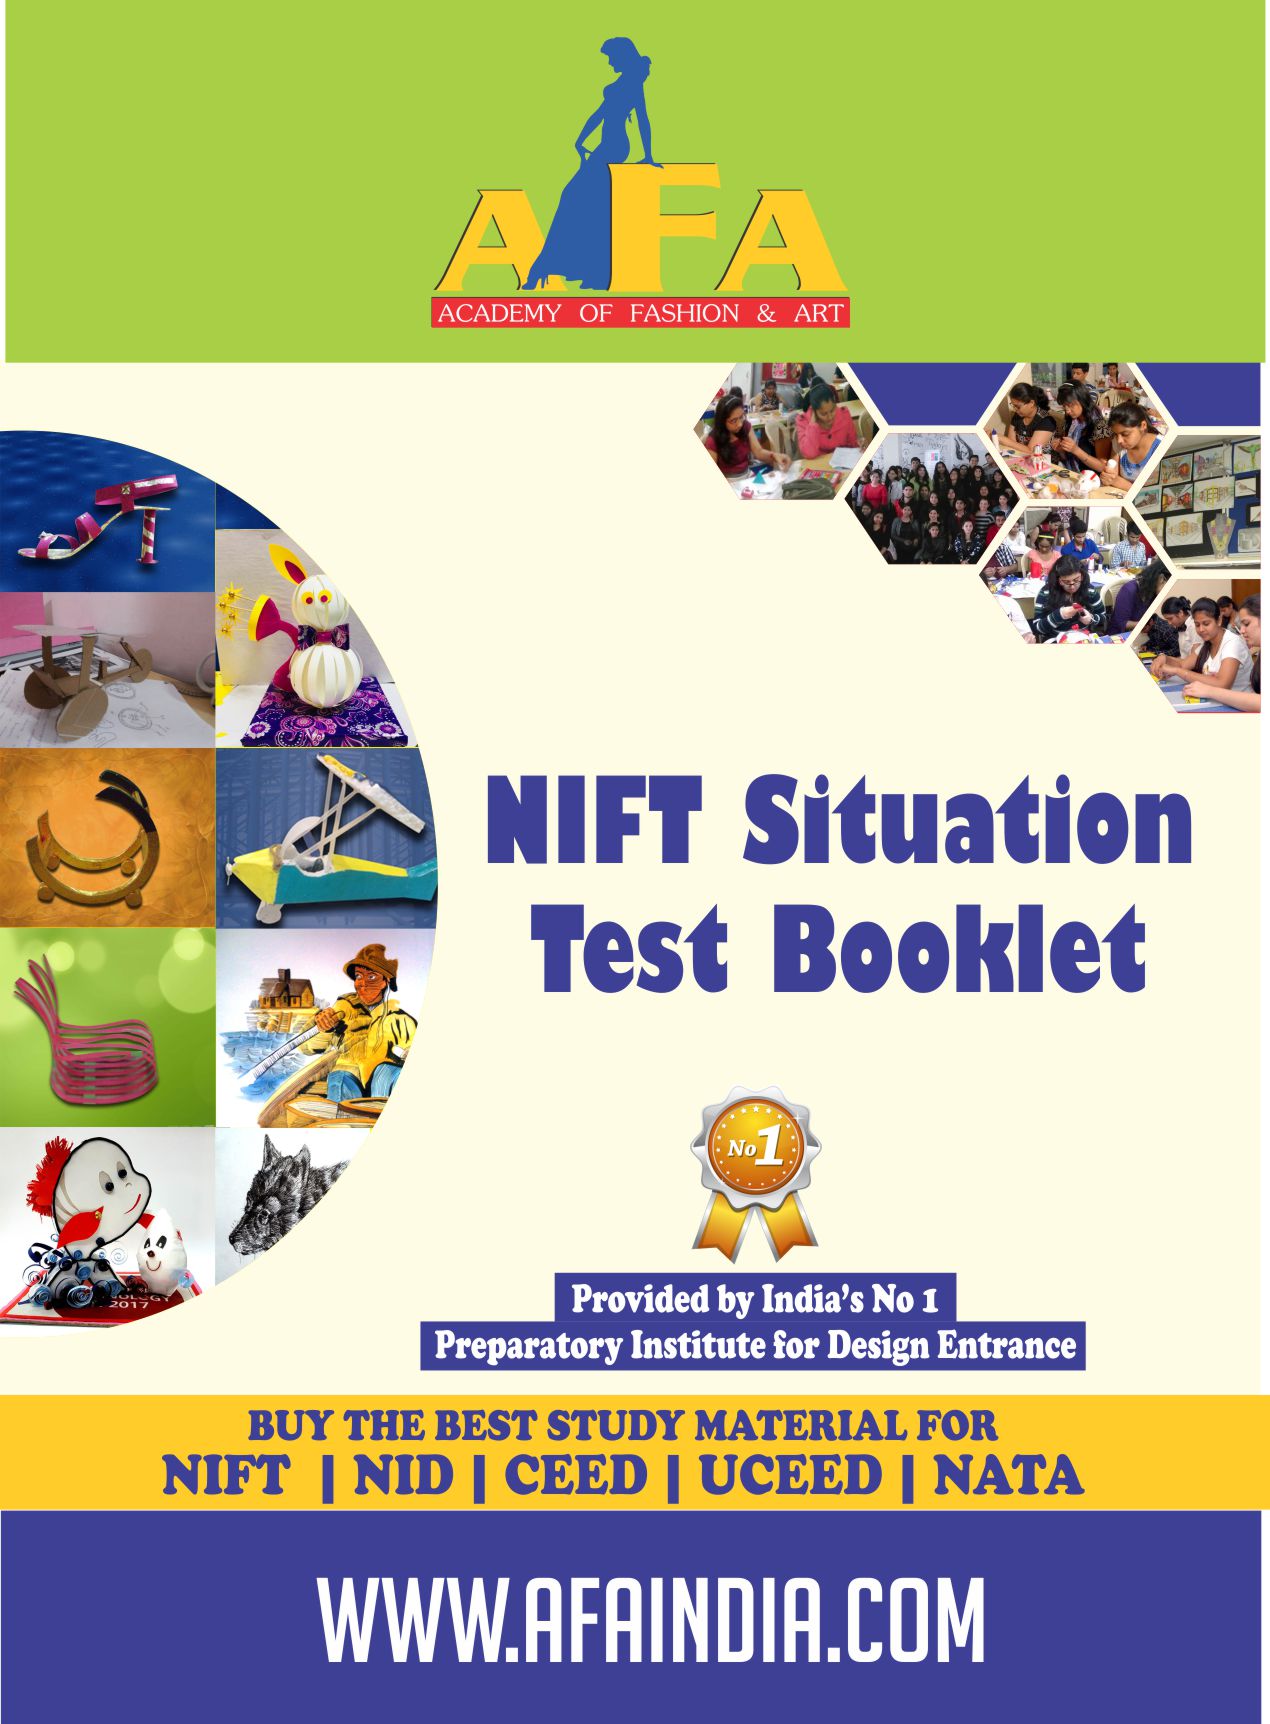 Sitation test booklet